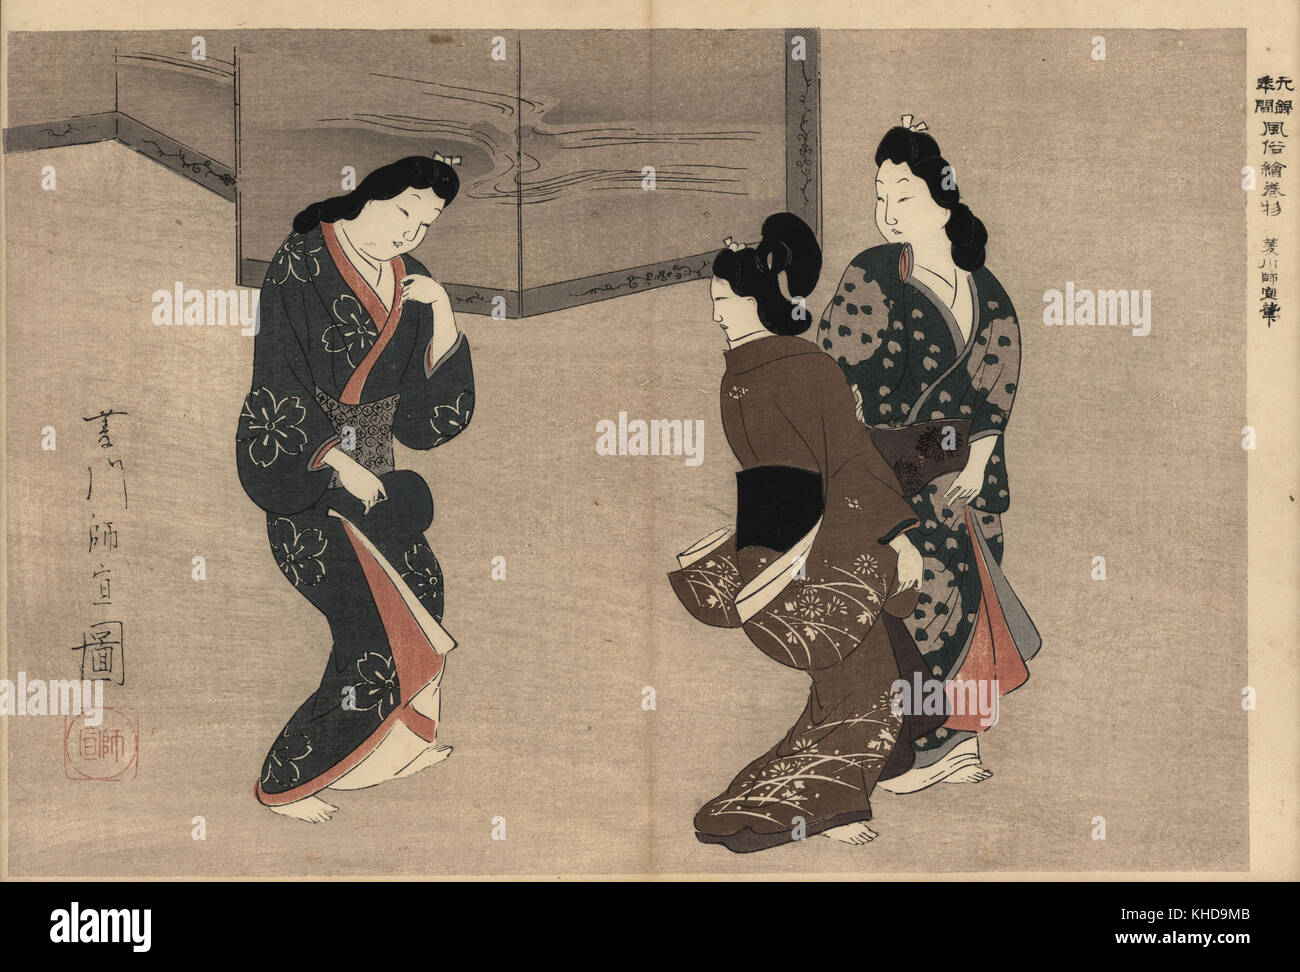 Les courtisanes Oiran danser devant un grand écran escamotable. Moronobu Hishikawa par gravure sur bois (1618-1694) de Fuzoku Emakimono, rouleau de la commerce de l'eau Tokyo, réimpression vers 1880. Banque D'Images